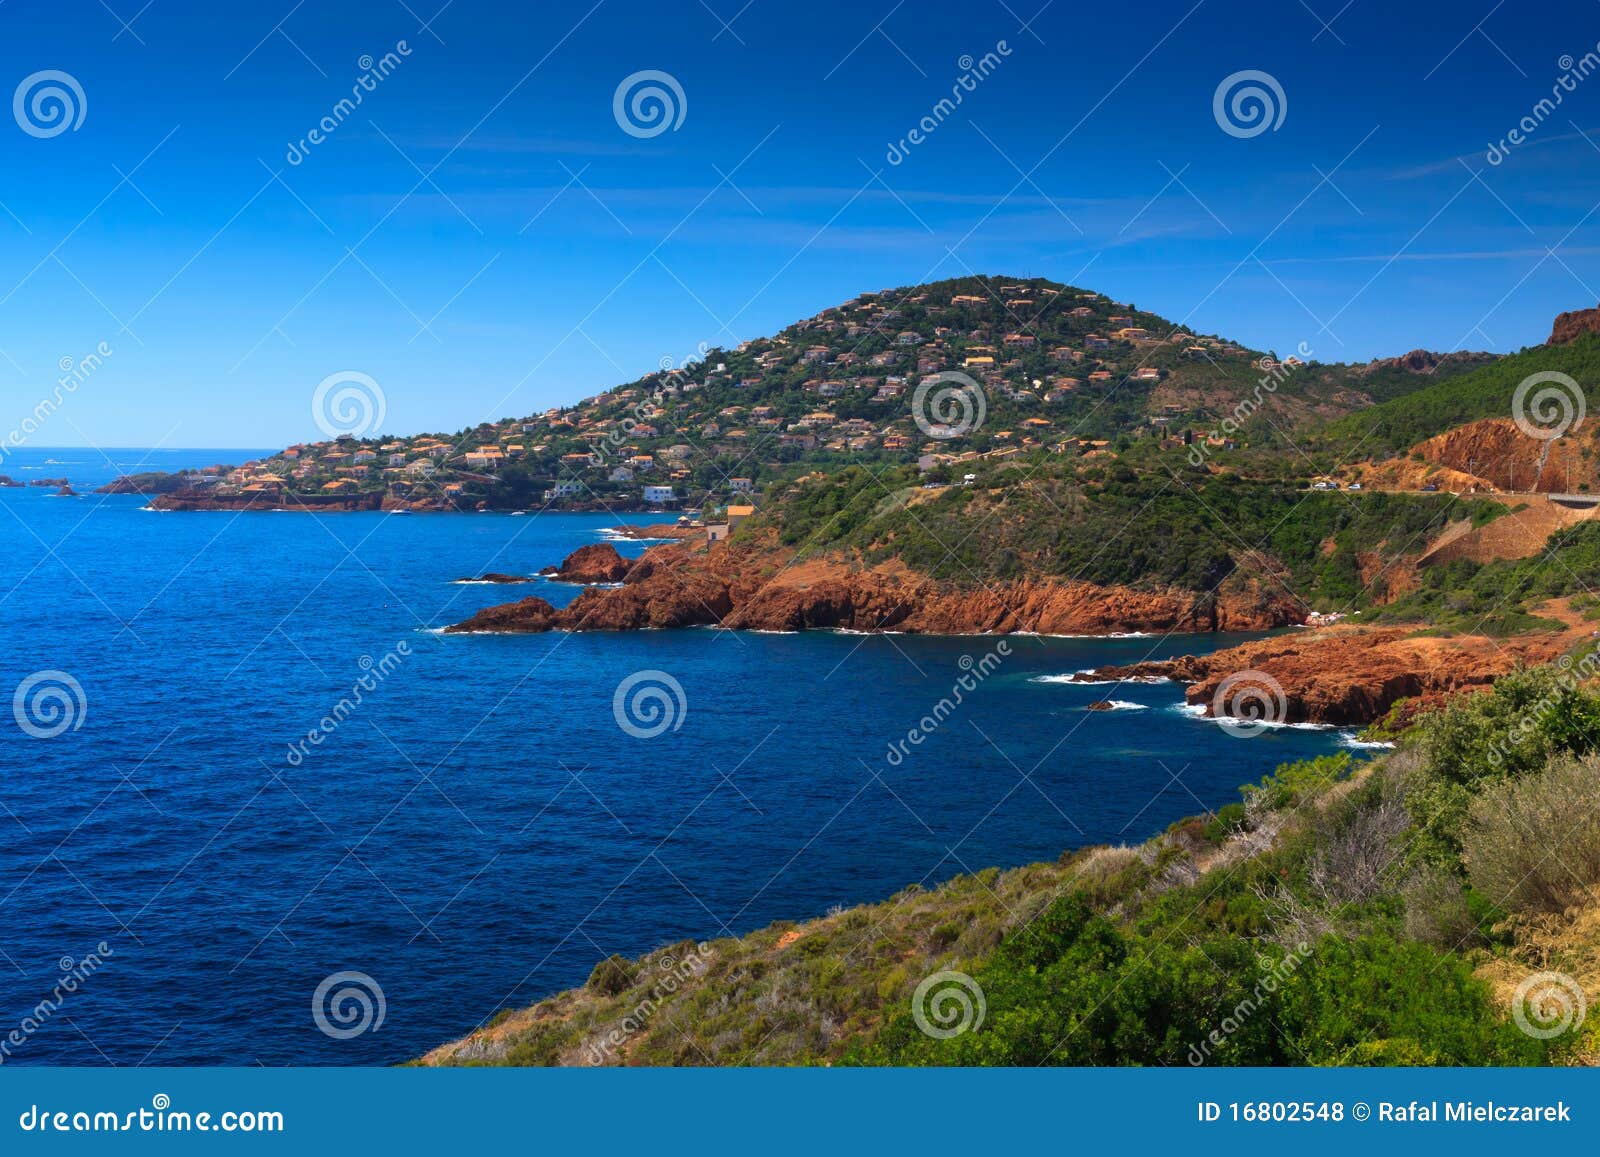 Franse Riviera stock foto. Image of rood, schoonheid - 16802548